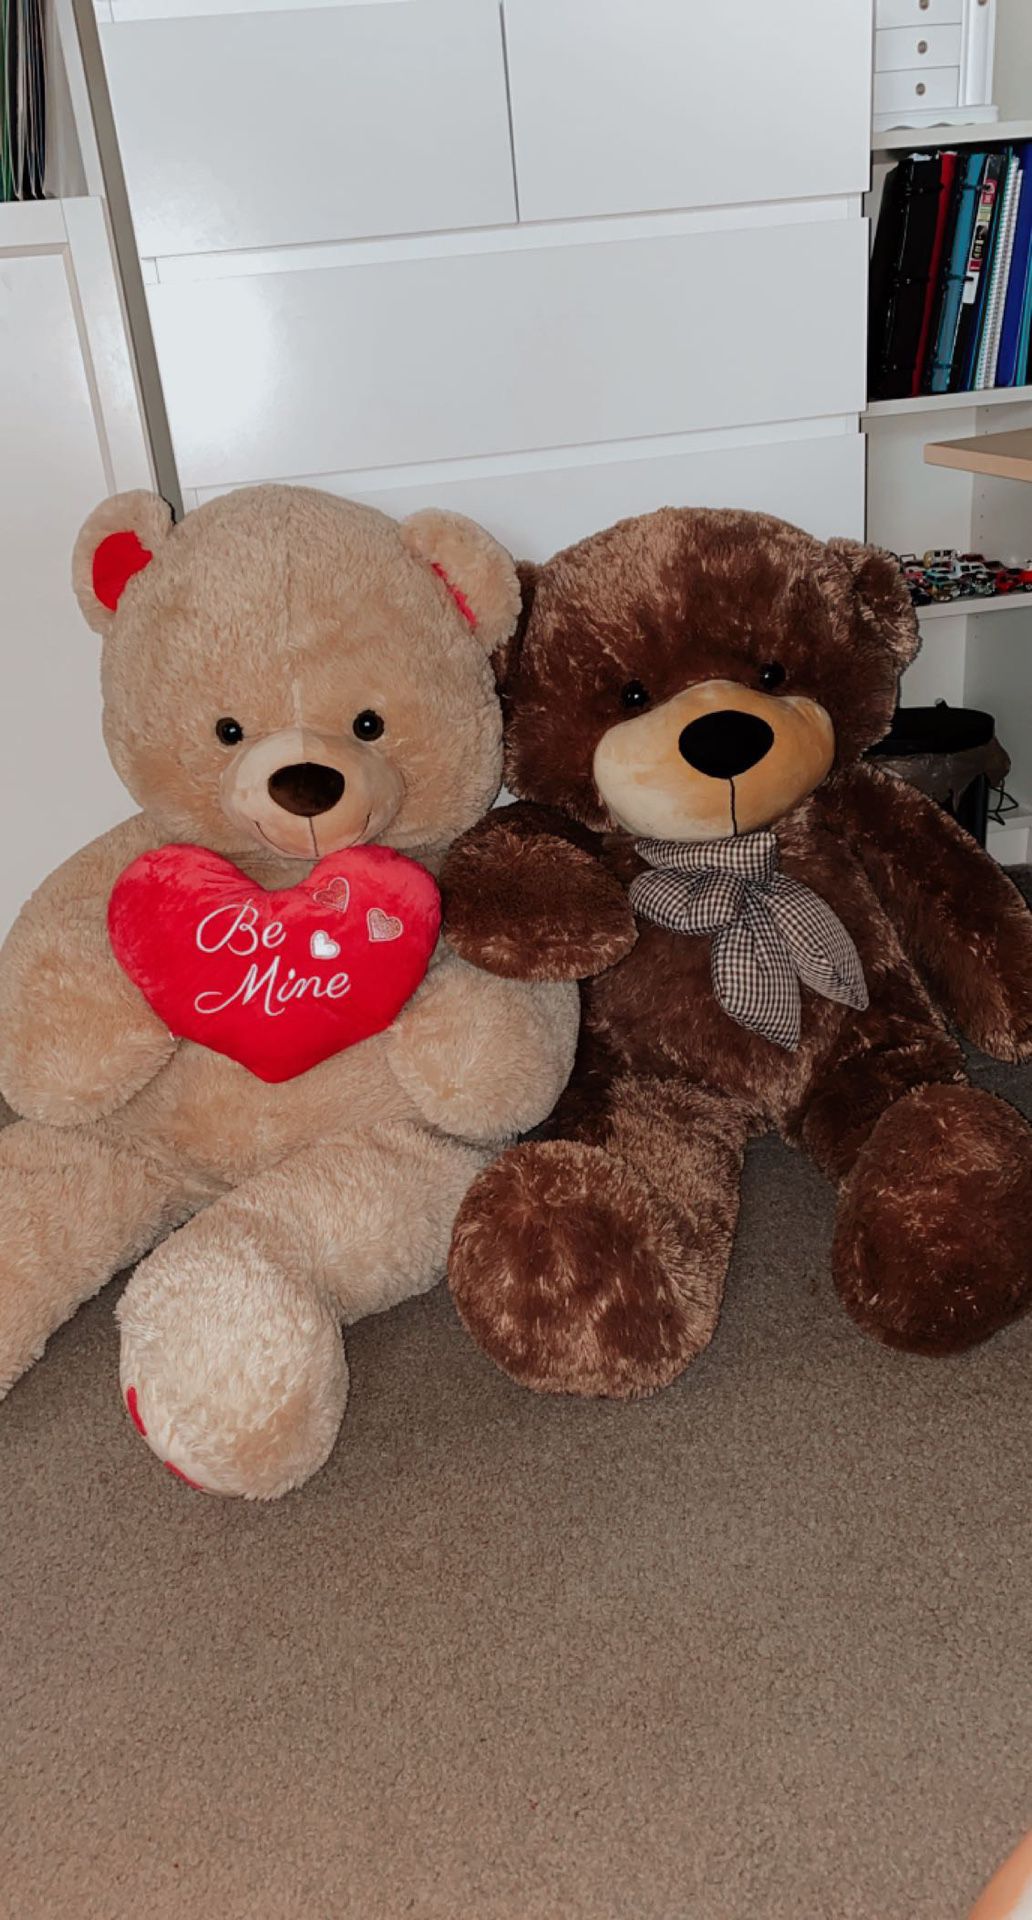 2 giant teddy bears